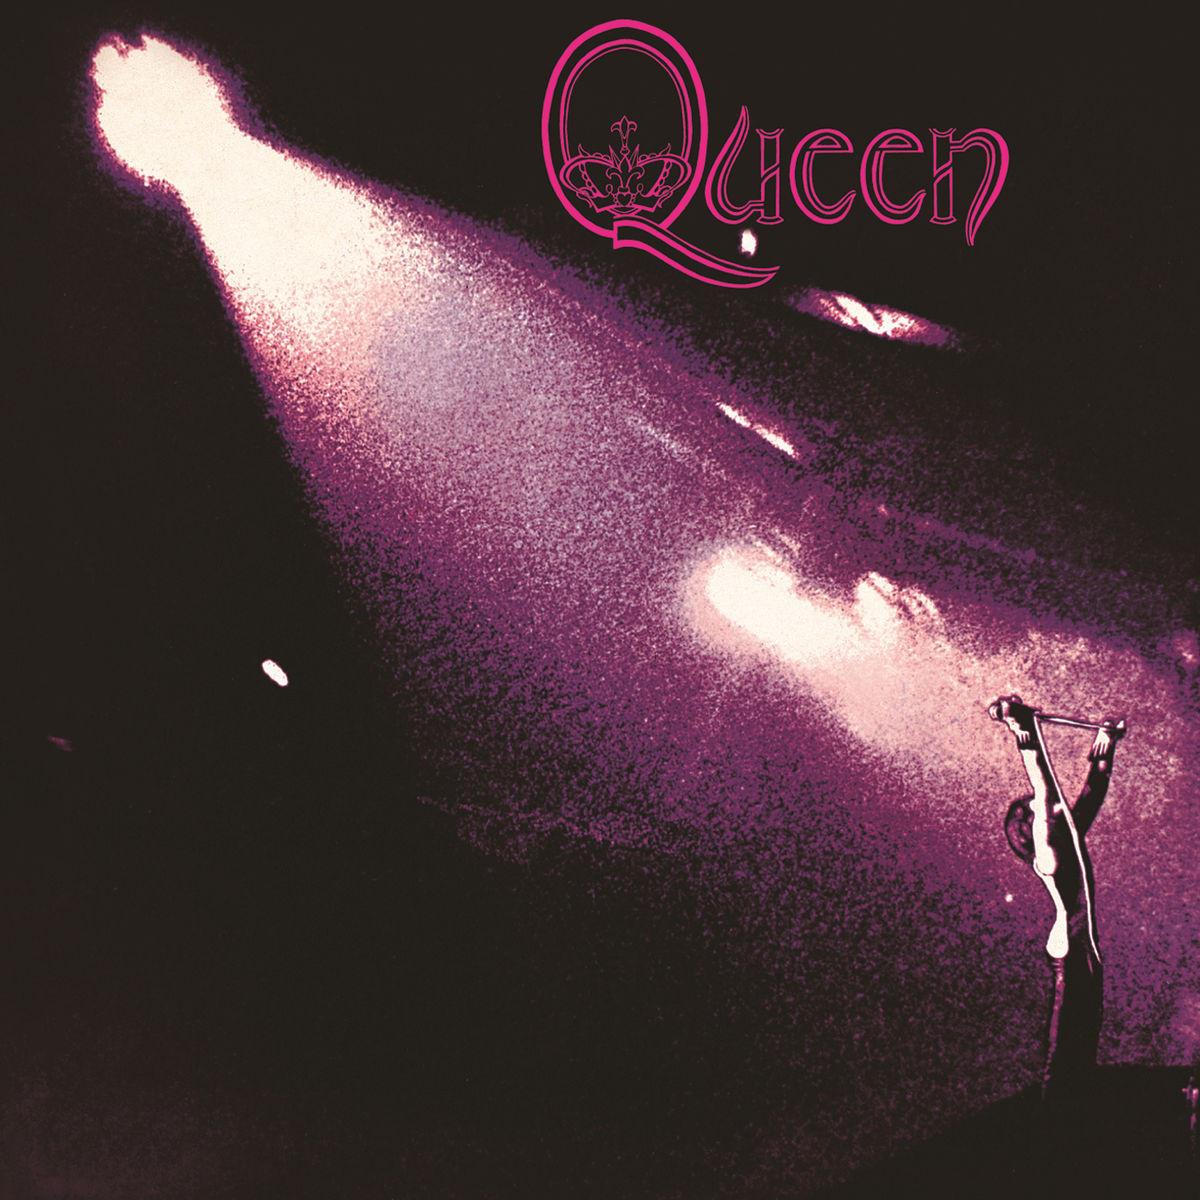 Queen I专辑